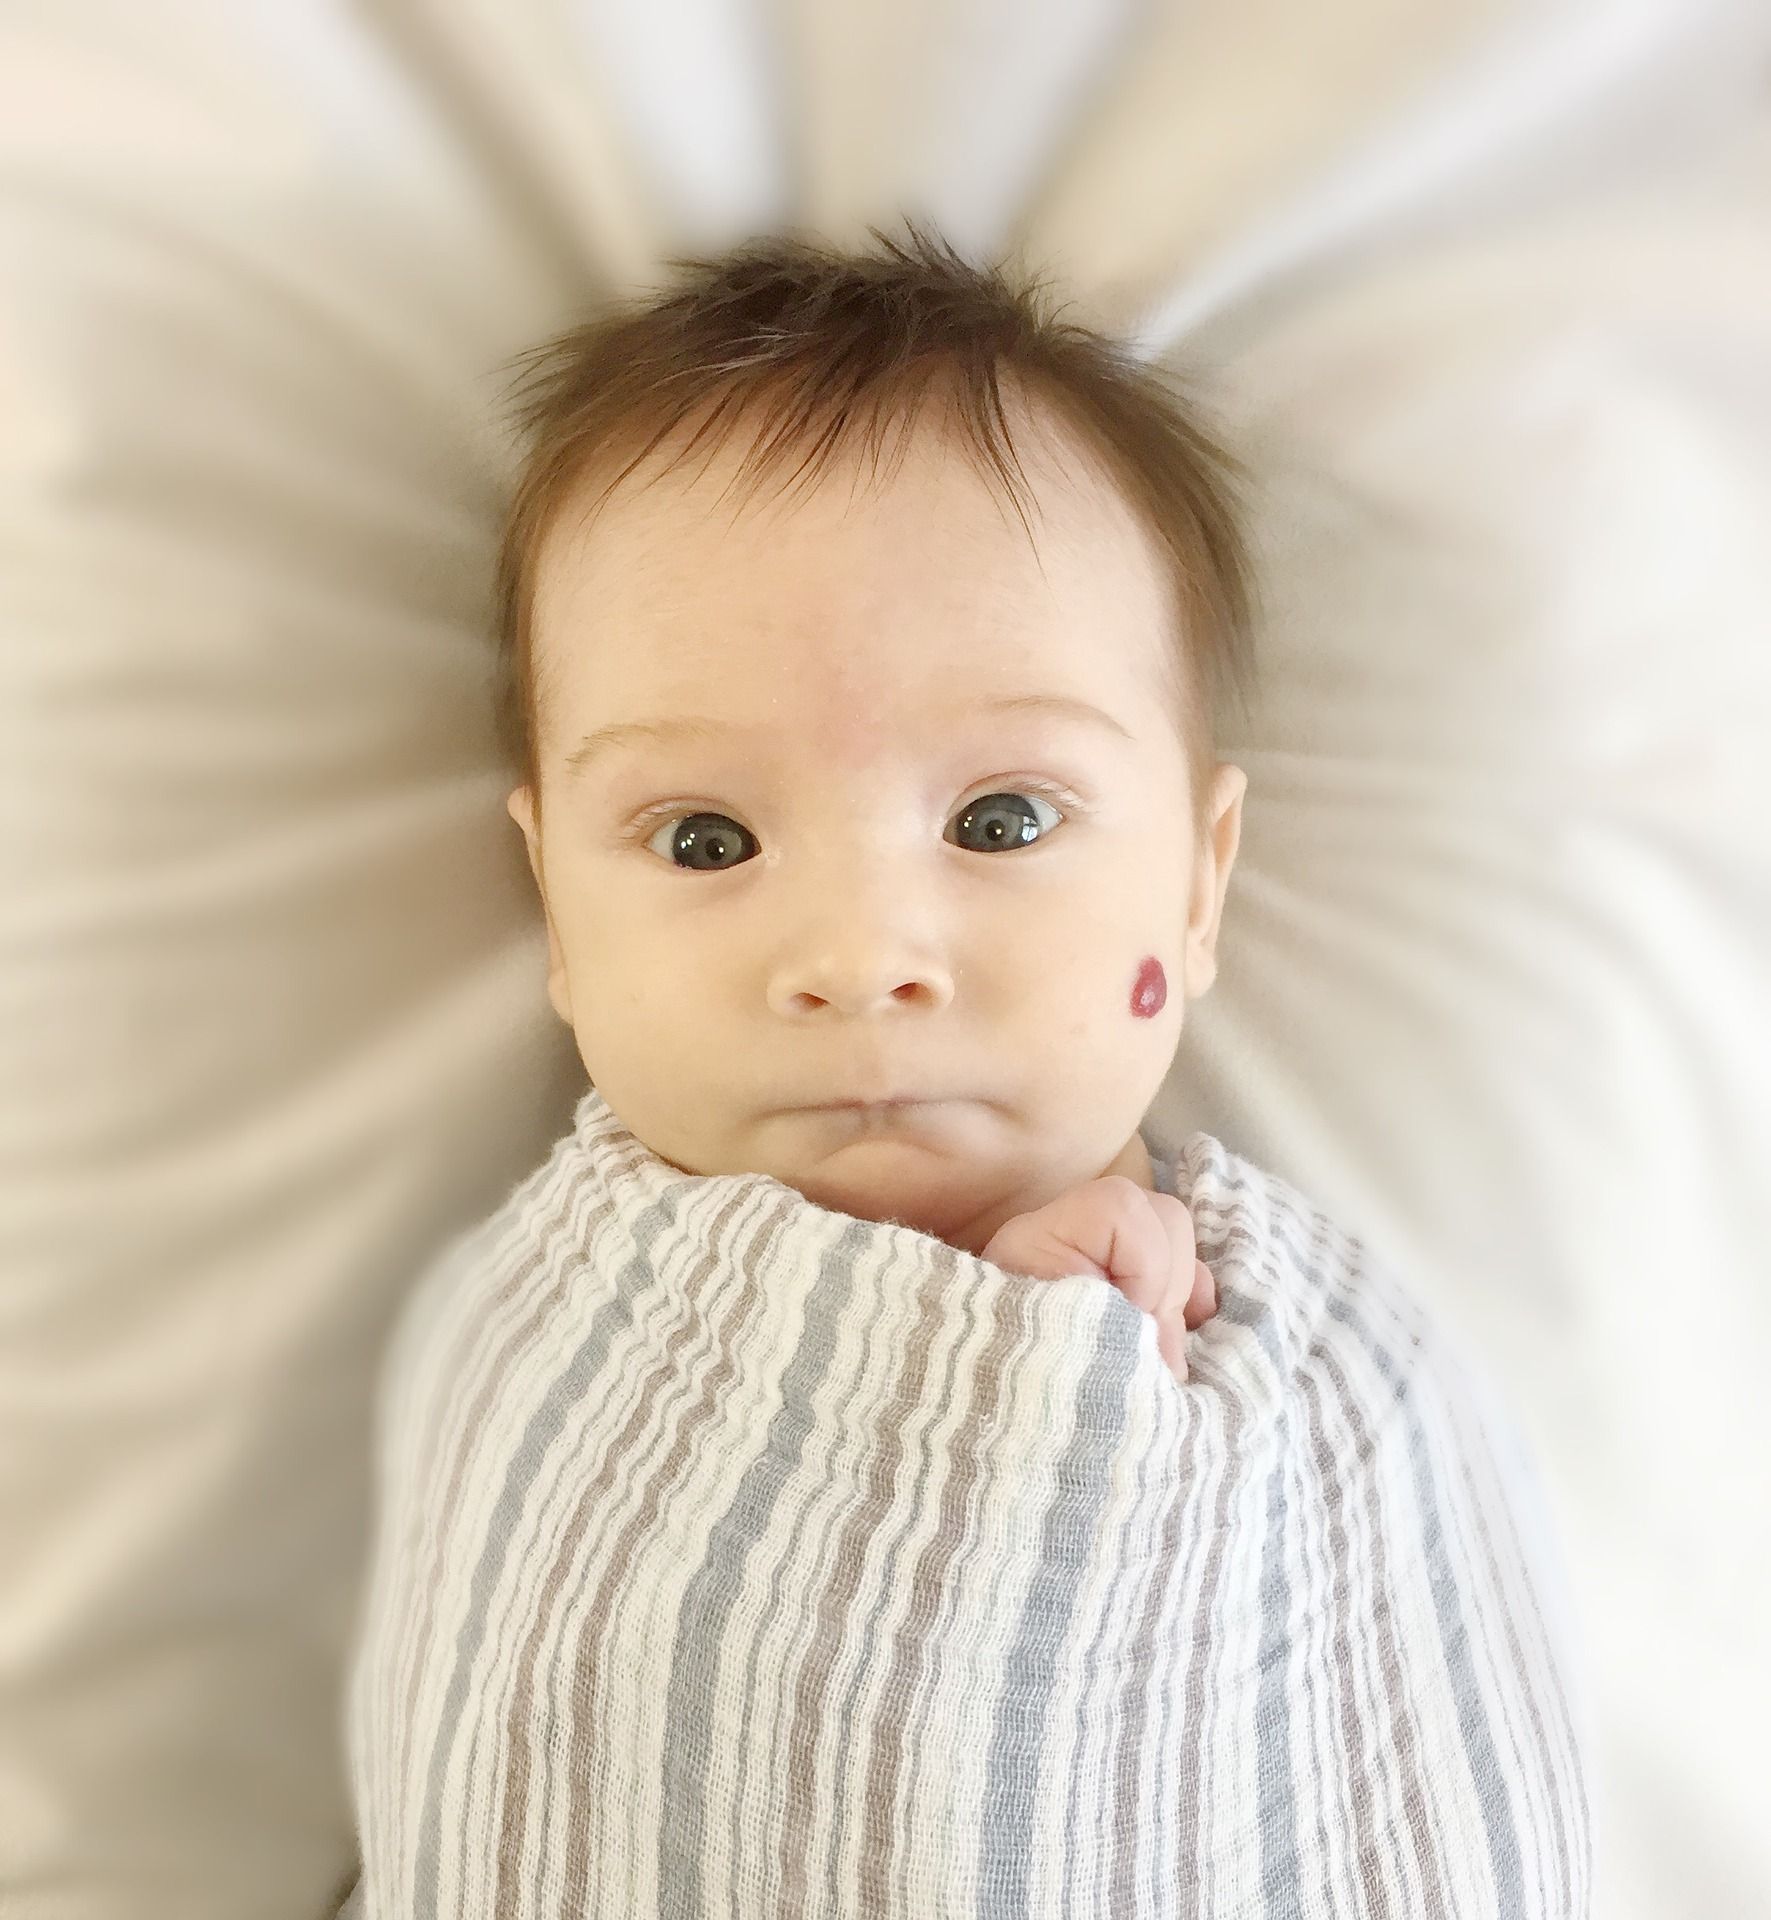 Naczyniak okresu niemowlęcego – przyczyny powstawania i leczenie naczyniaków u niemowląt